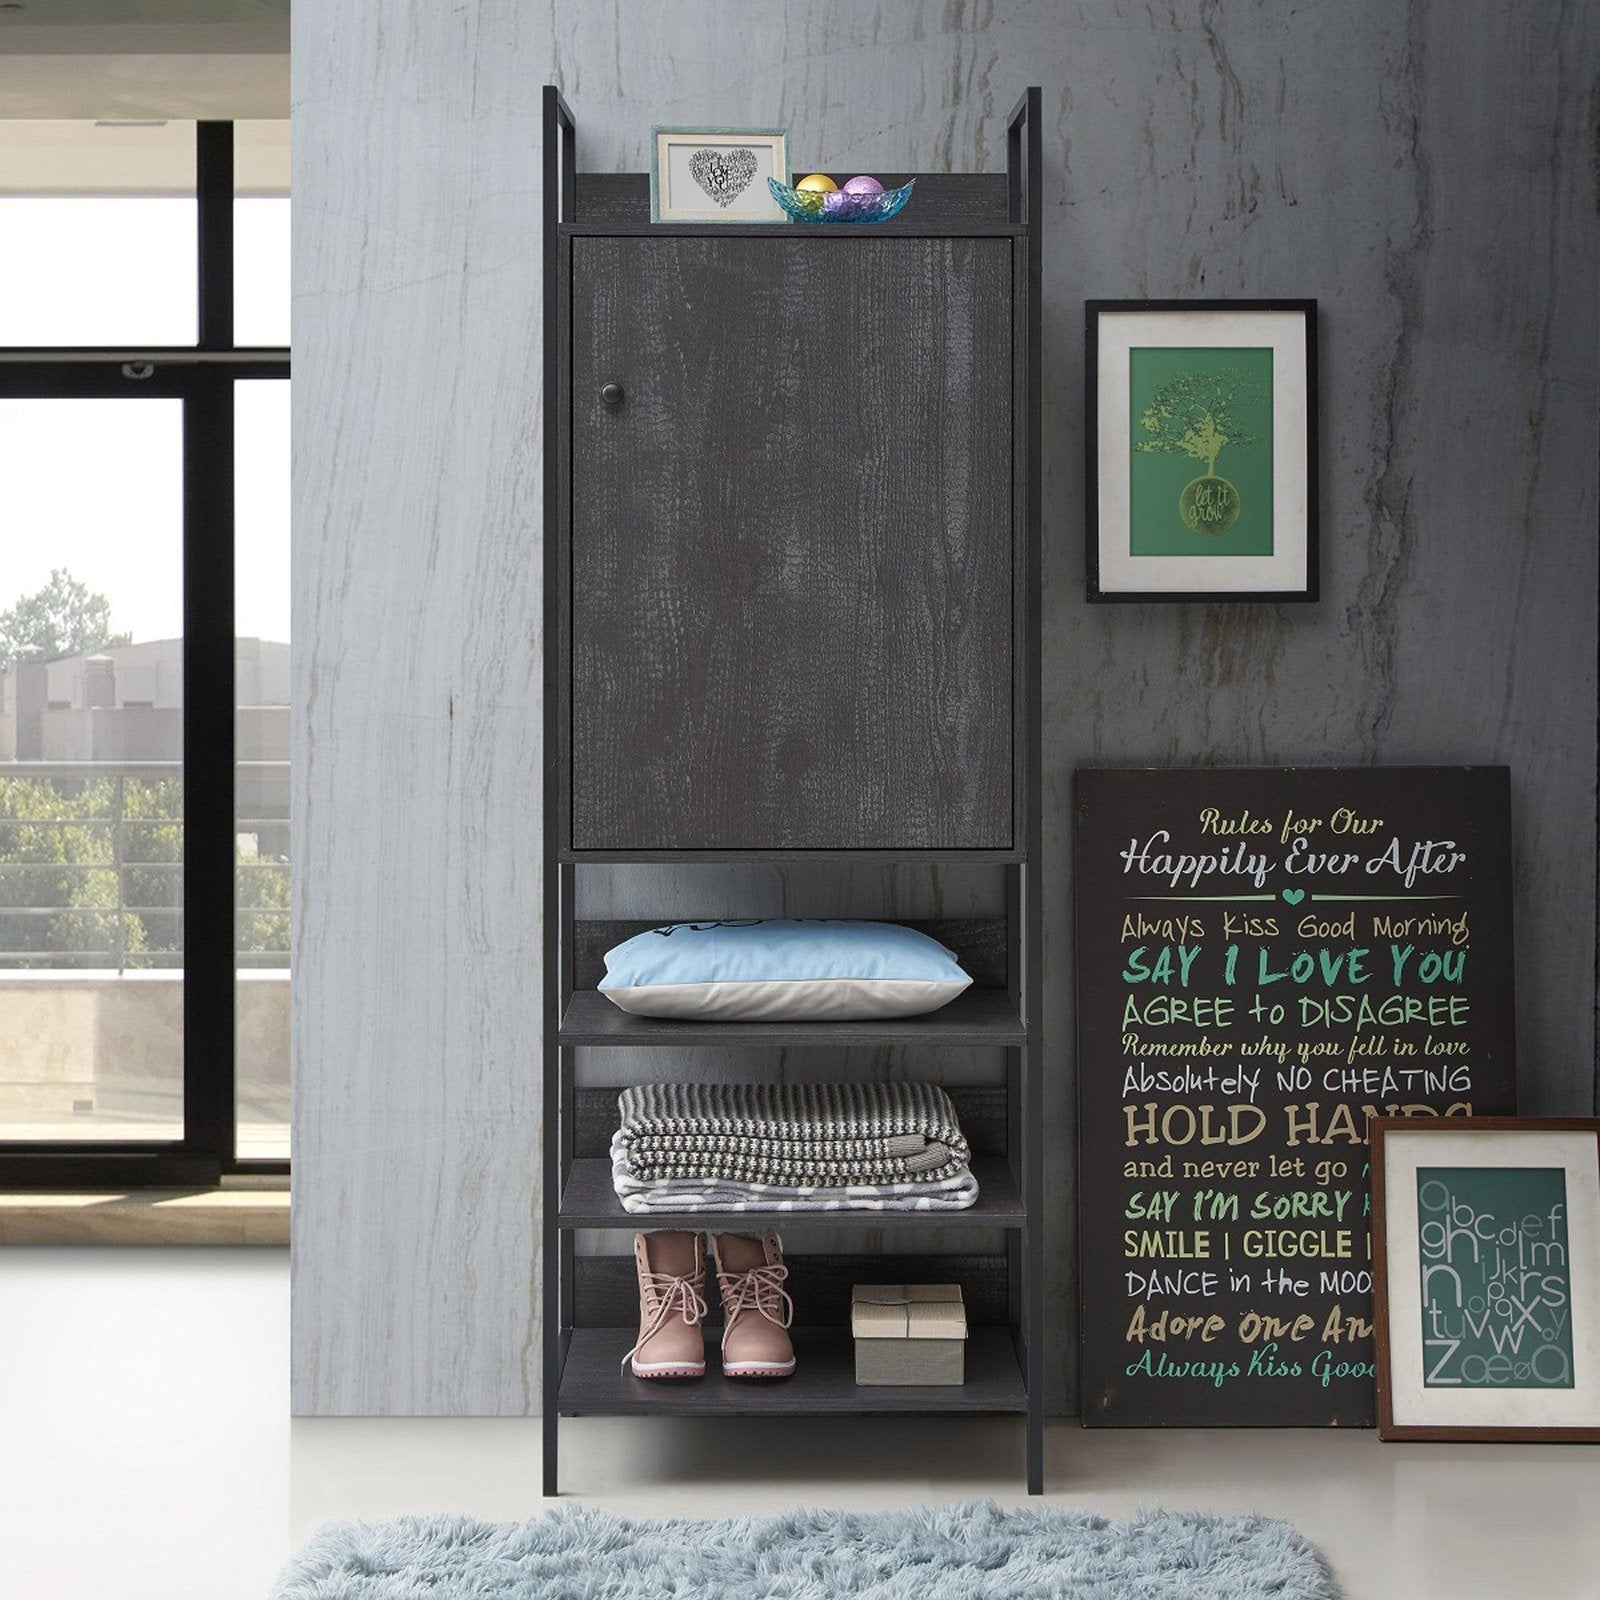 Zahra Storage Cabinet with 1 Door & 3 Shelves